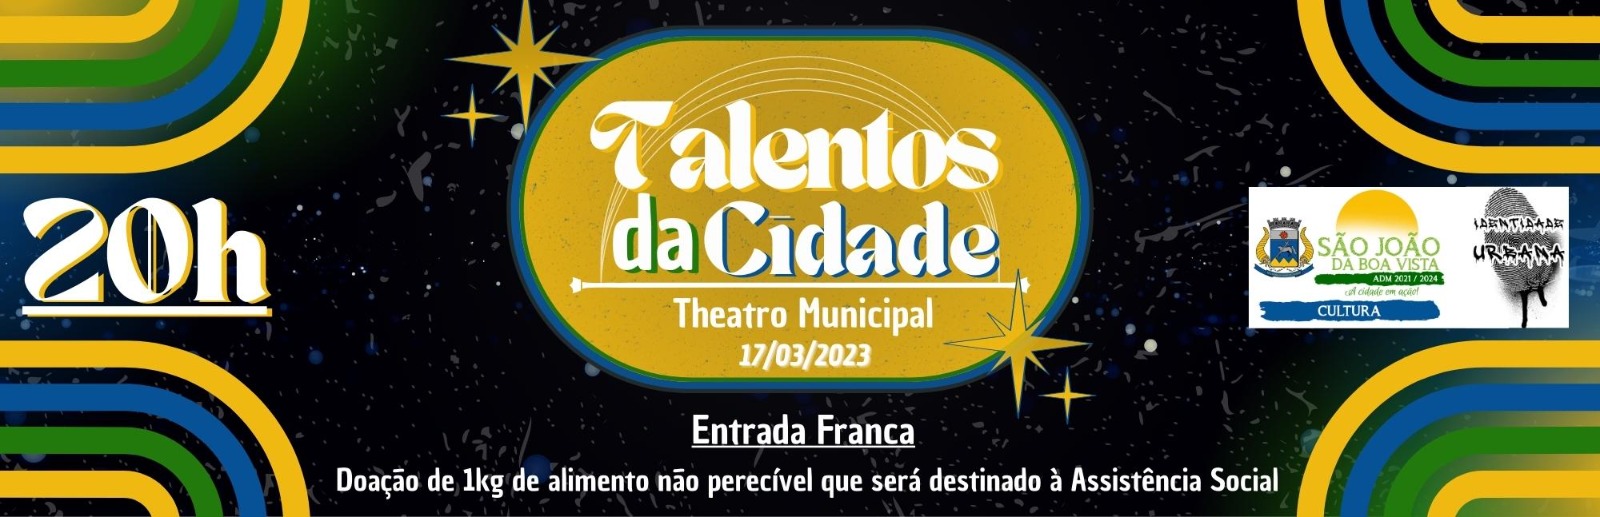 Talentos da Cidade: Theatro Municipal recebe evento beneficente com diversidade artística